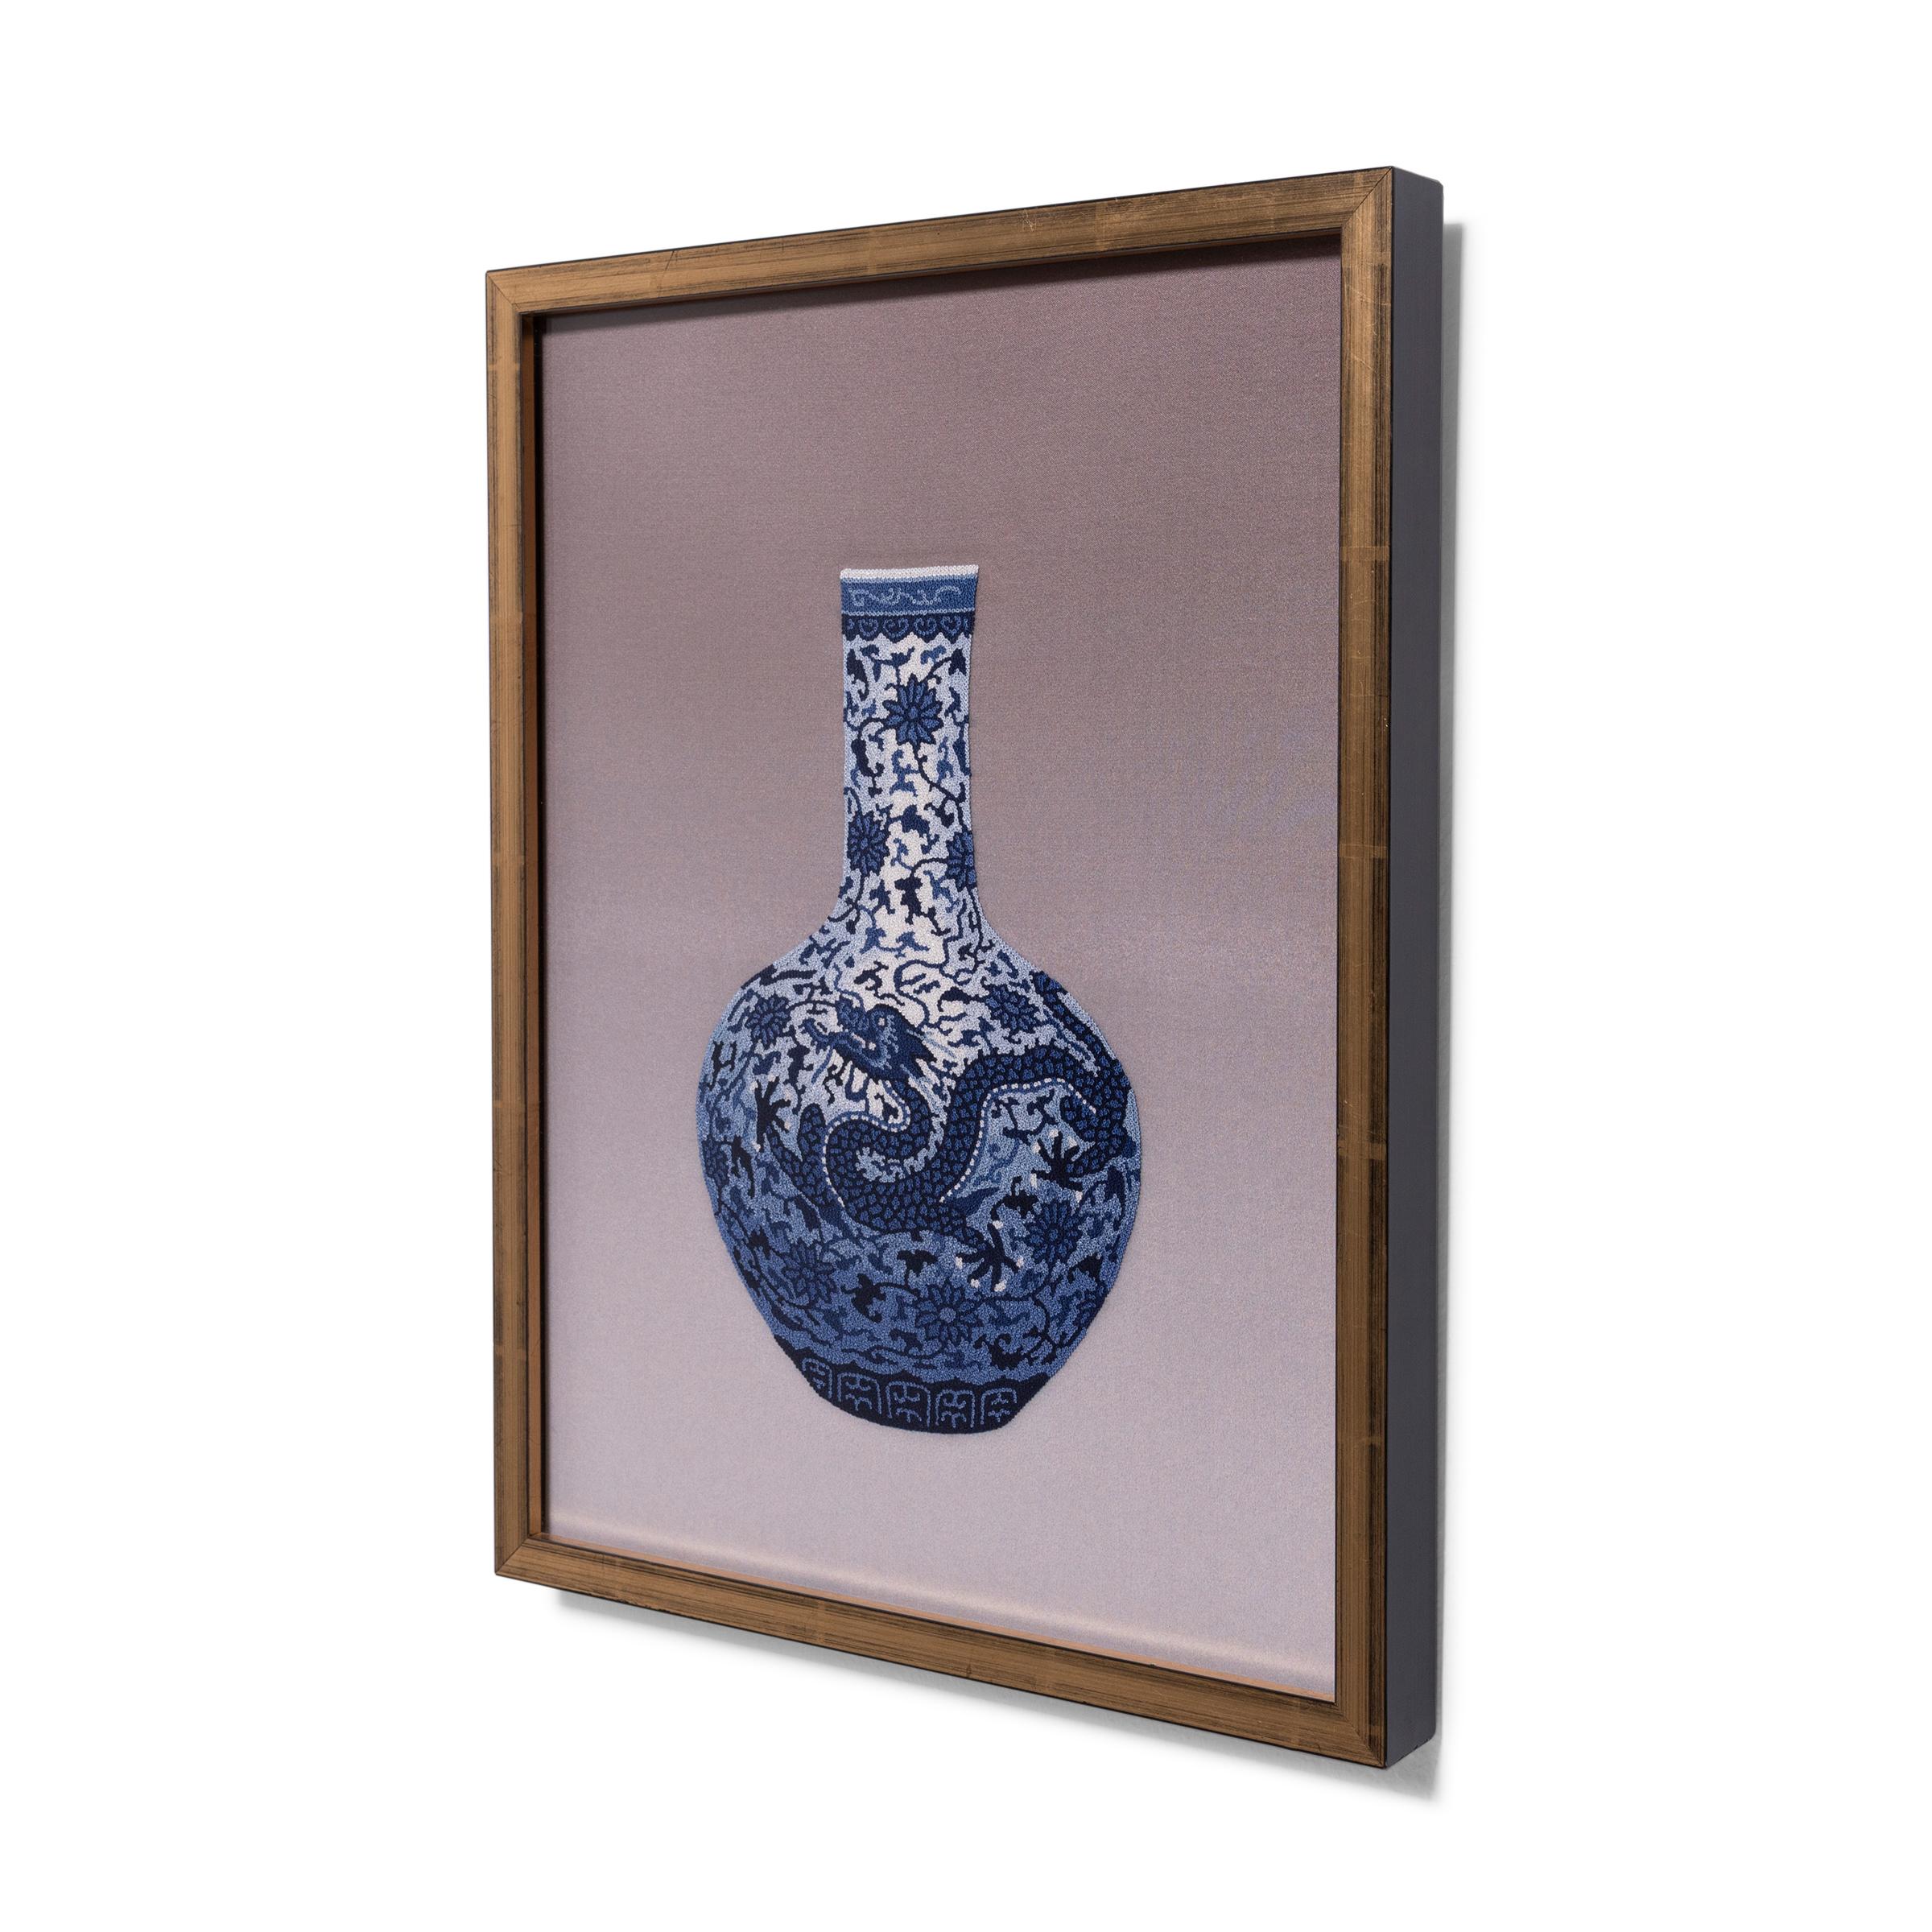 Dieses gerahmte Seidentextil ist ein wunderbares Beispiel für chinesische Stickerei und zeigt mit dem berüchtigten verbotenen Stich eine feine blau-weiße Porzellanvase. Der verbotene Knoten, der auch als 